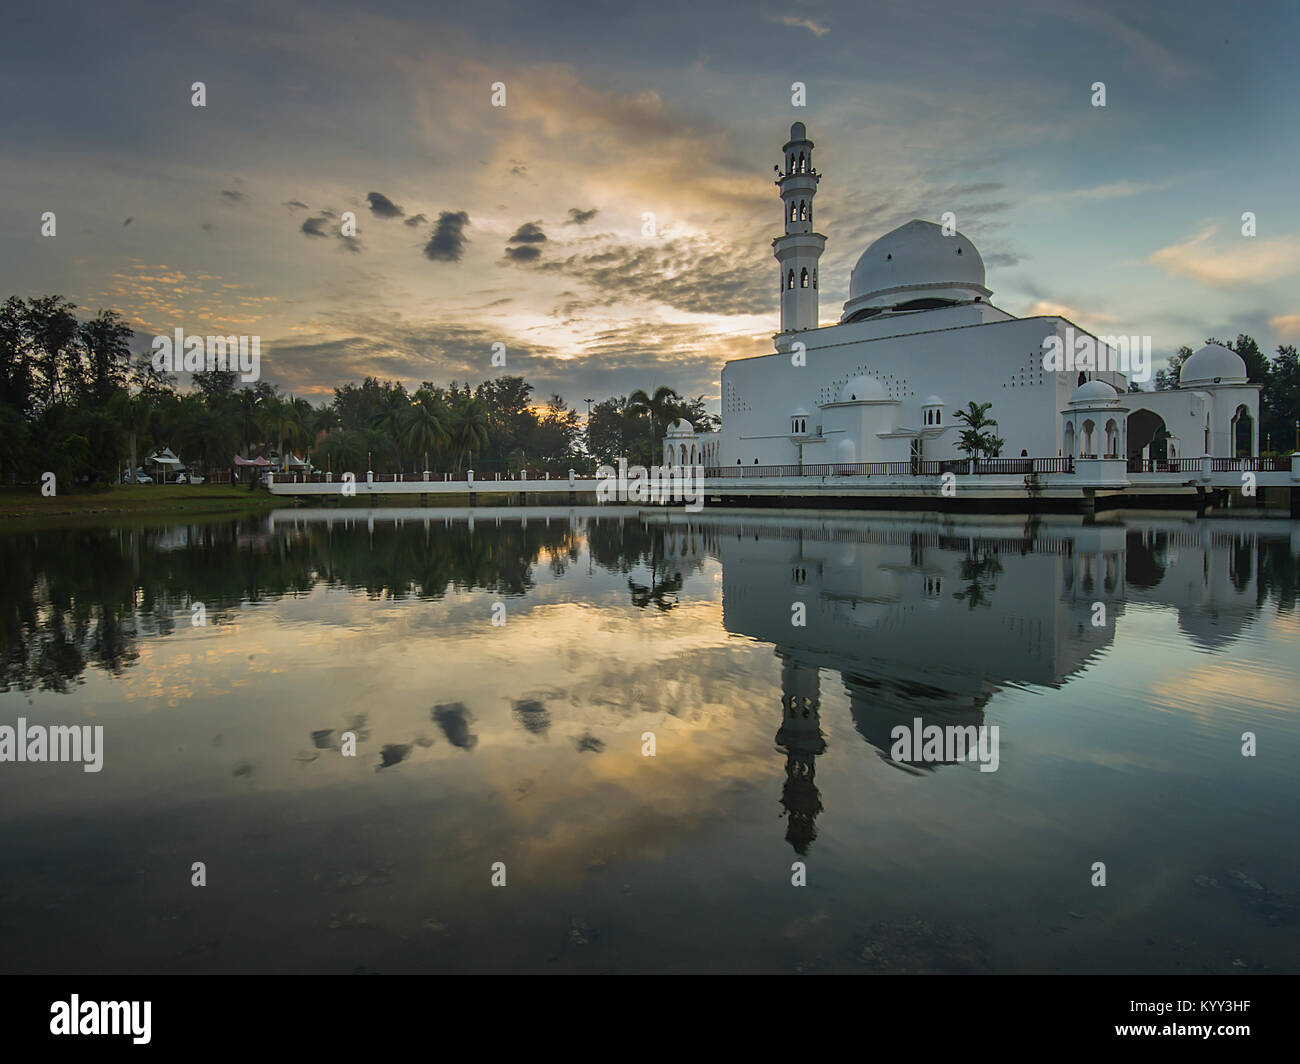 L'Tengku Tengah Zaharah mosquée ou la Mosquée flottante est la première véritable mosquée flottante en Malaisie et situé au Terengganu Malaisie Banque D'Images